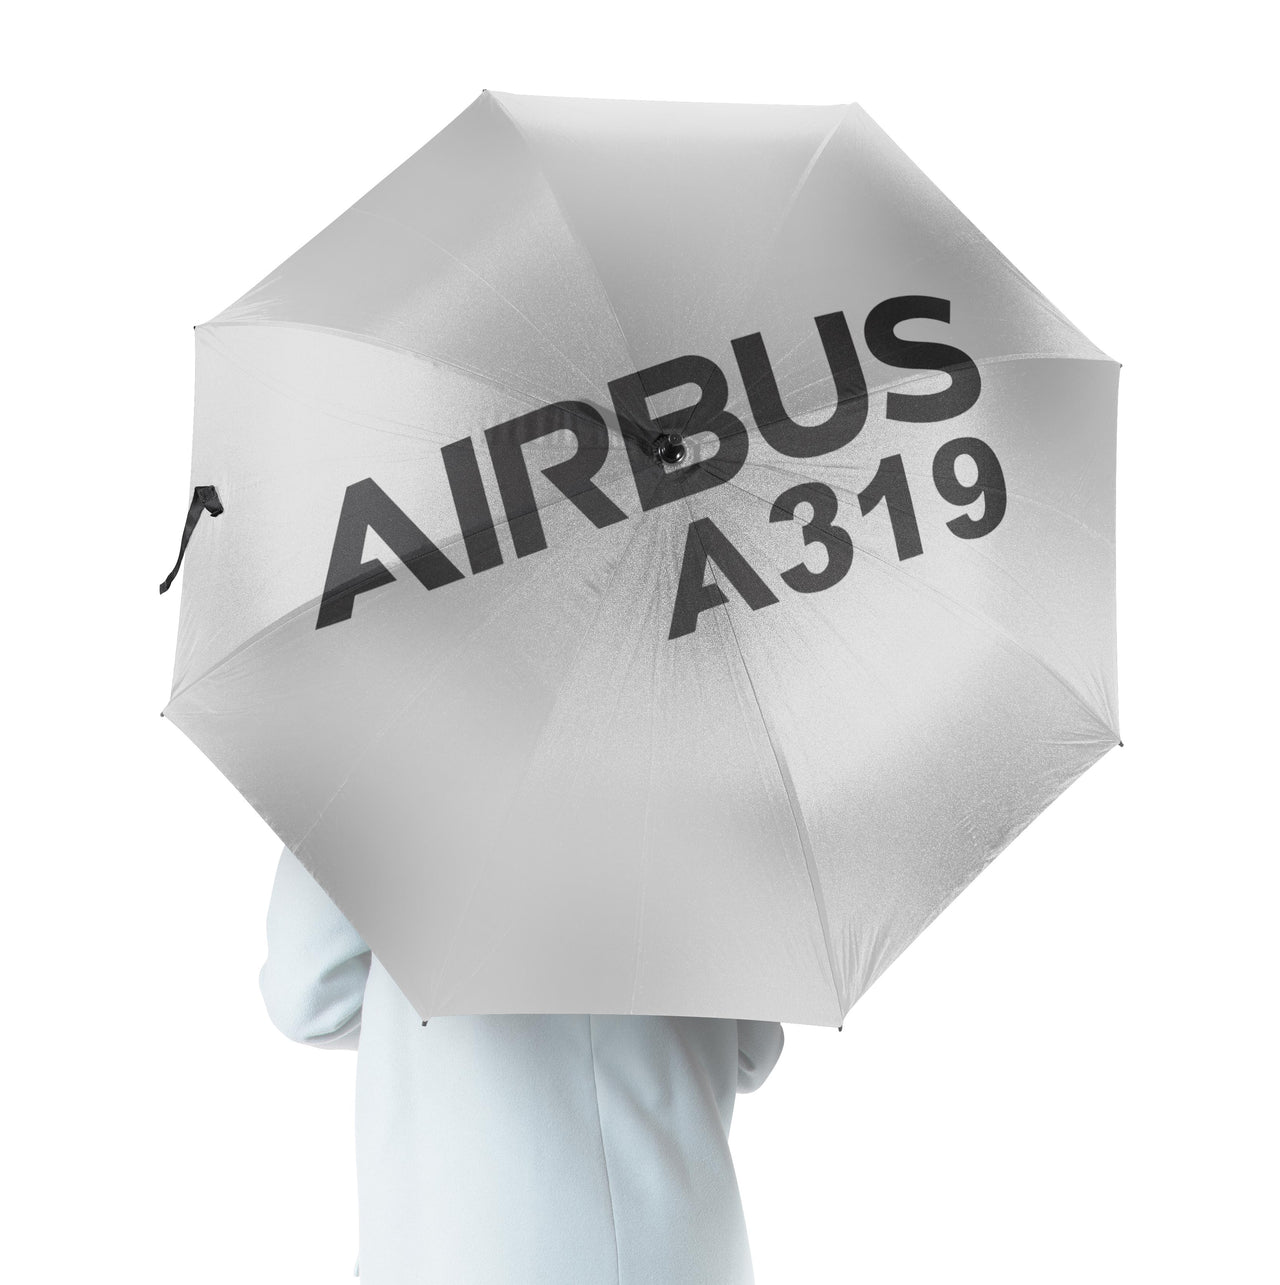 Airbus A319 & Text Designed Umbrella